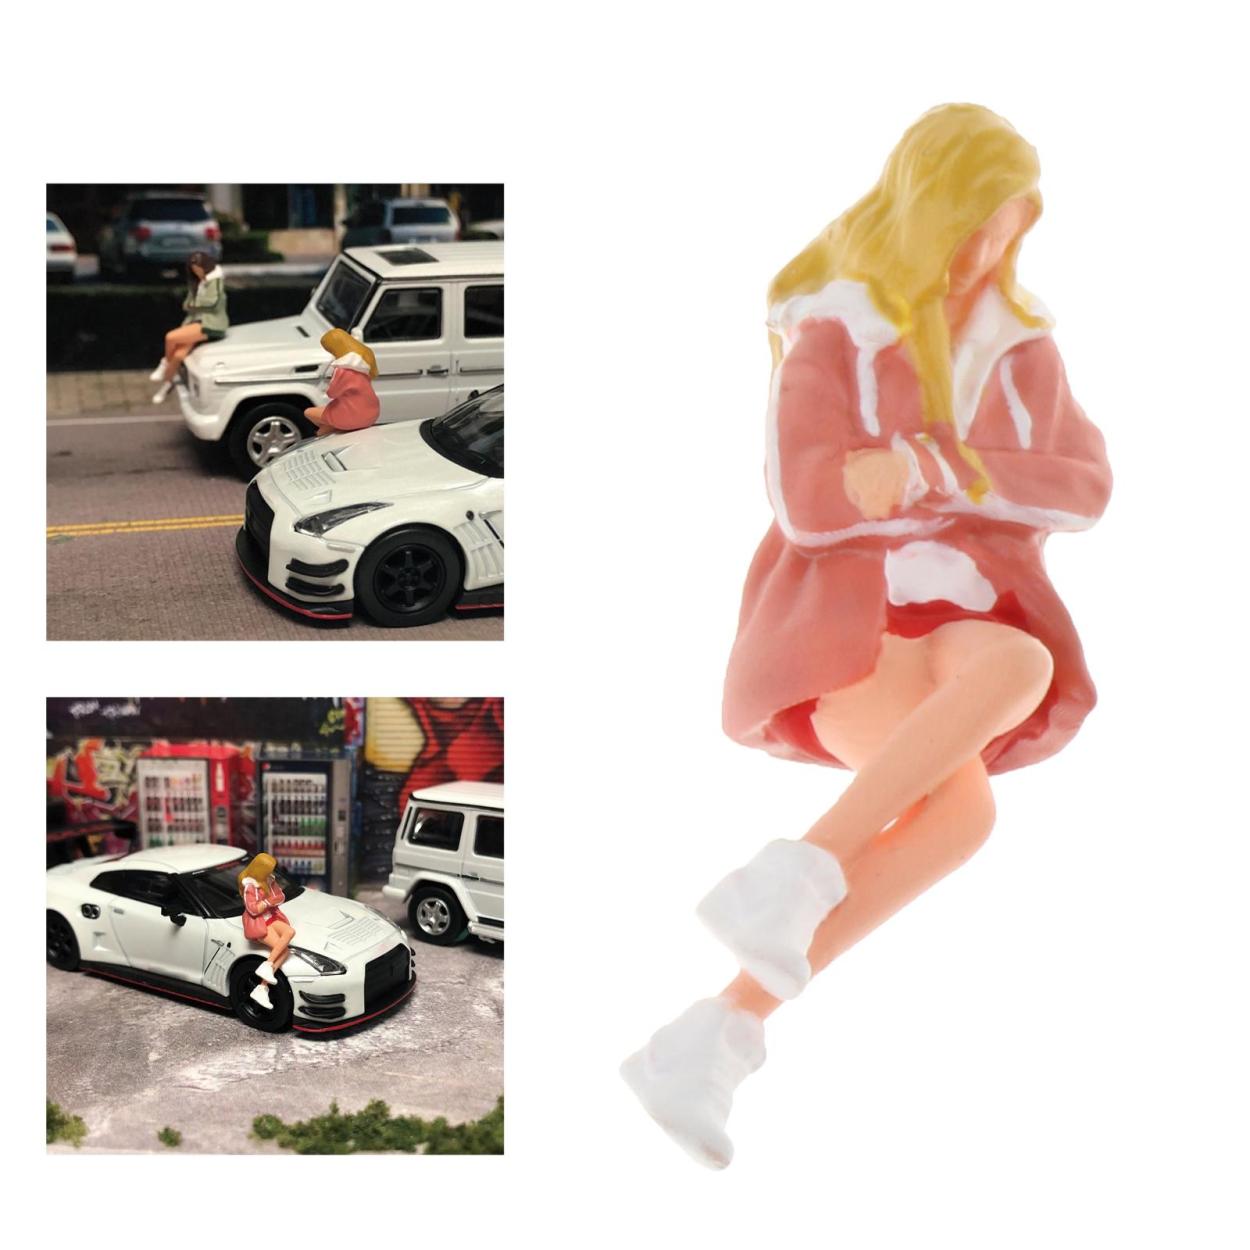 ミニモデルピープルフィギュア.1:64スケール女の子モデル人のおもちゃミニチュア装飾アクセサリー.樹脂男性フィギュア置物表示